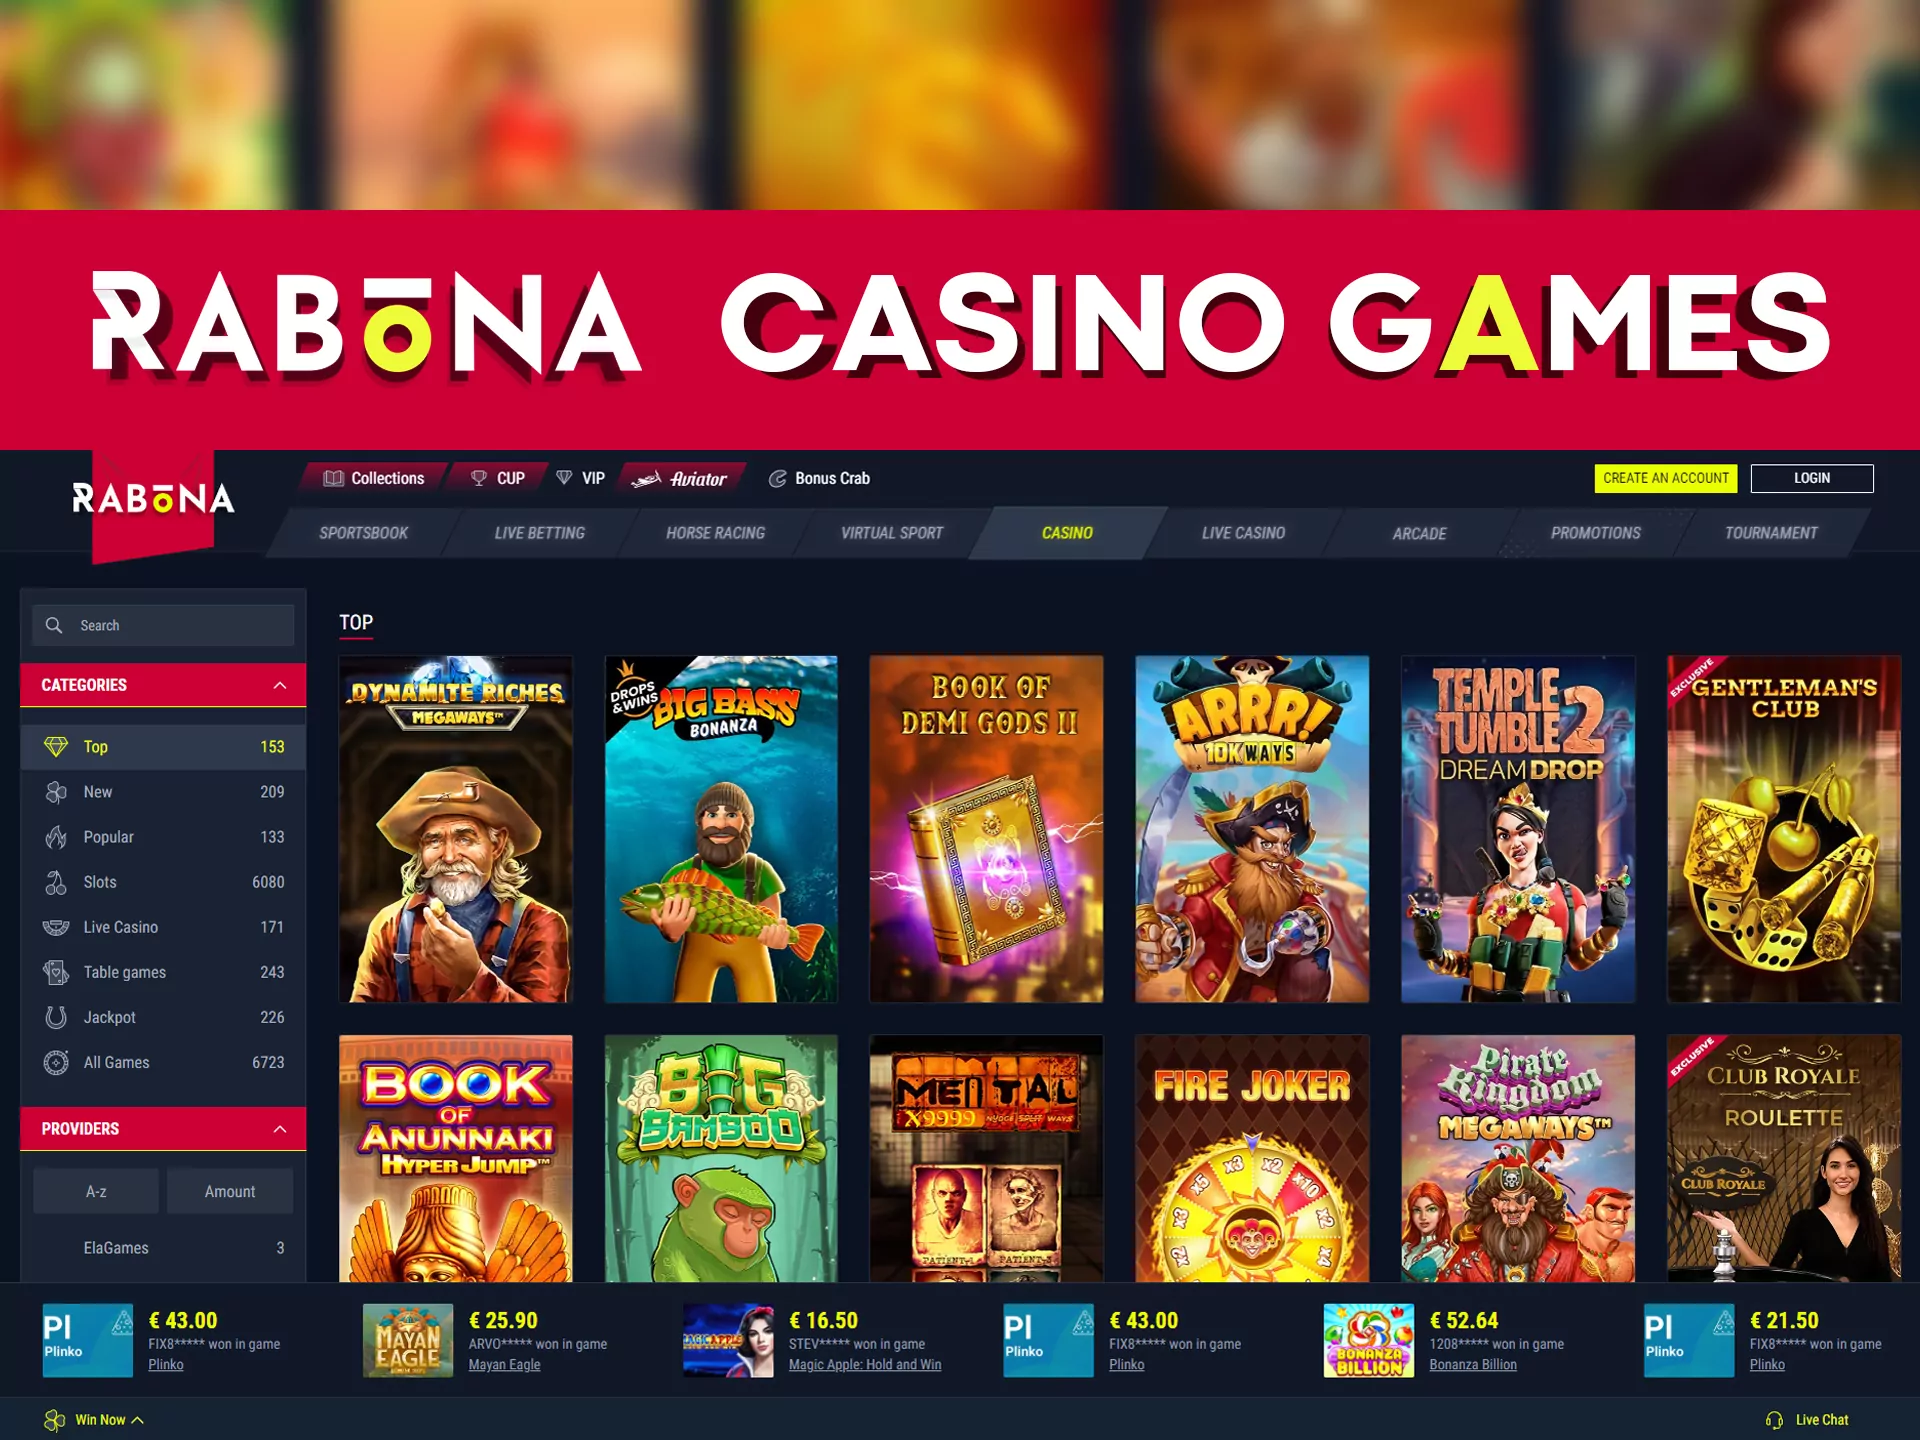 Play casino games at Rabona.